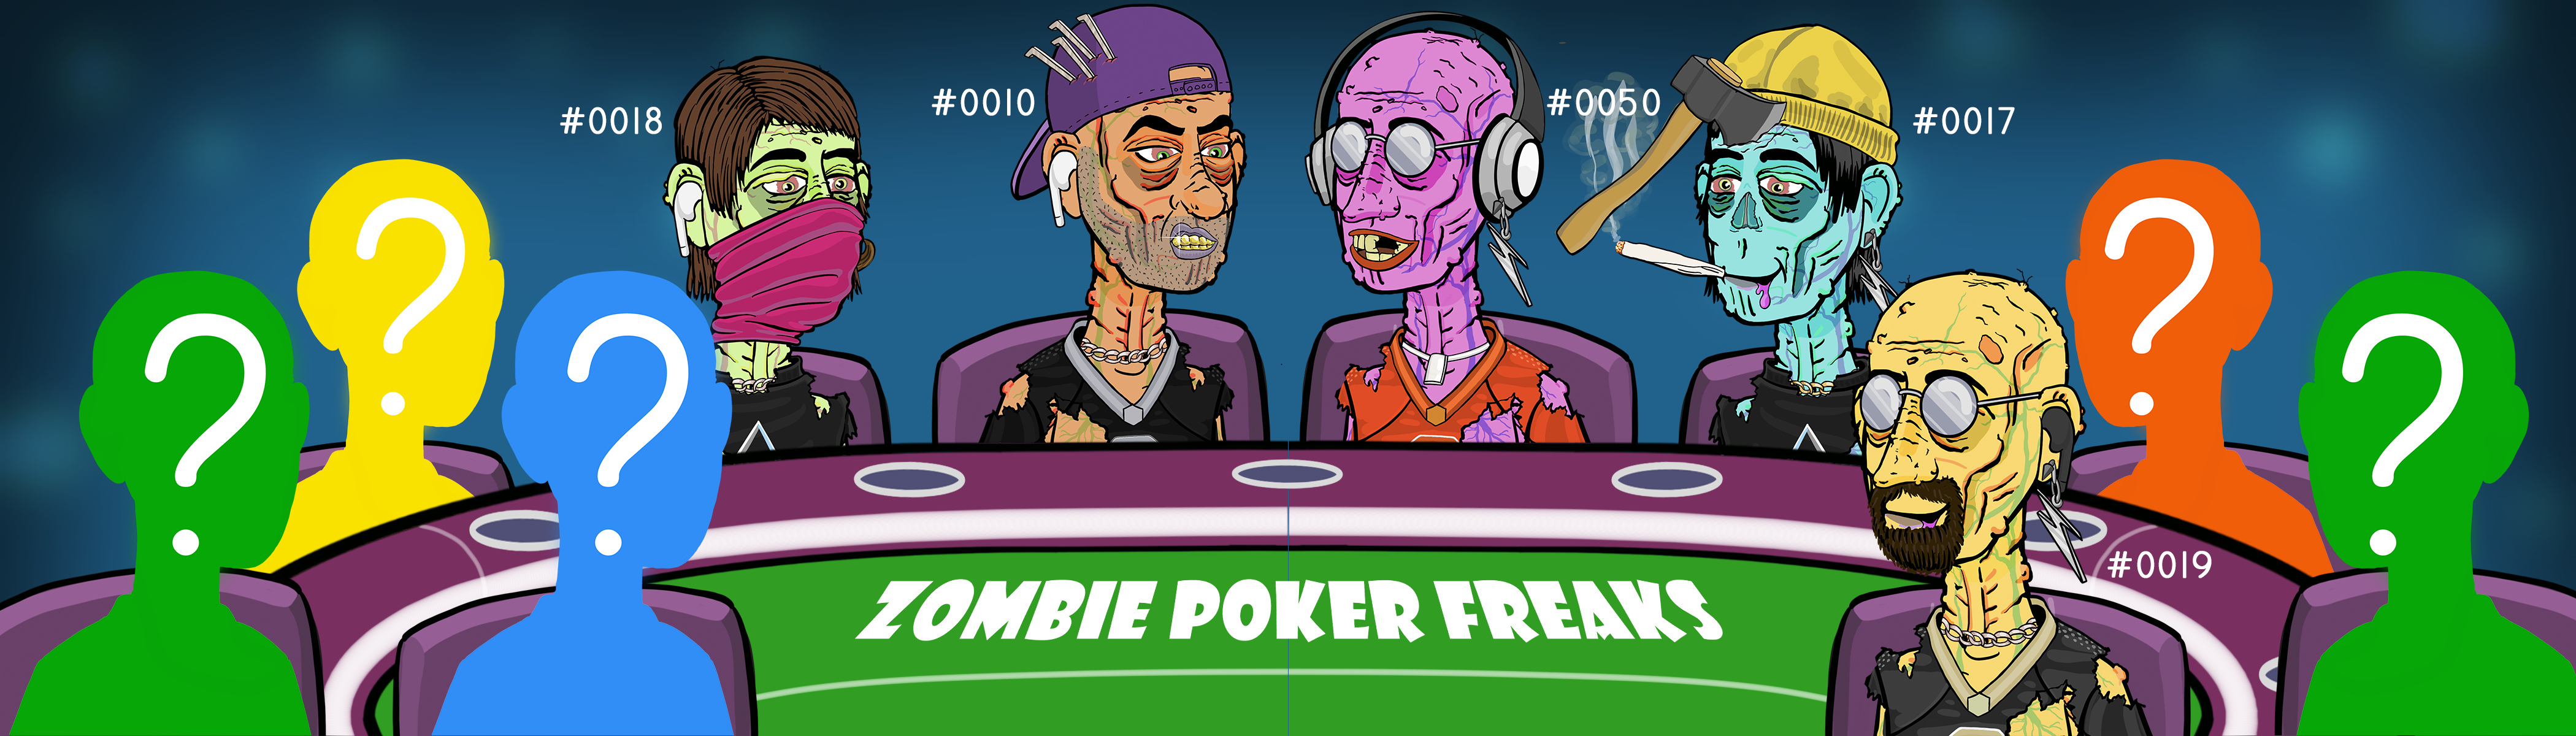 Zombie Poker Freaks